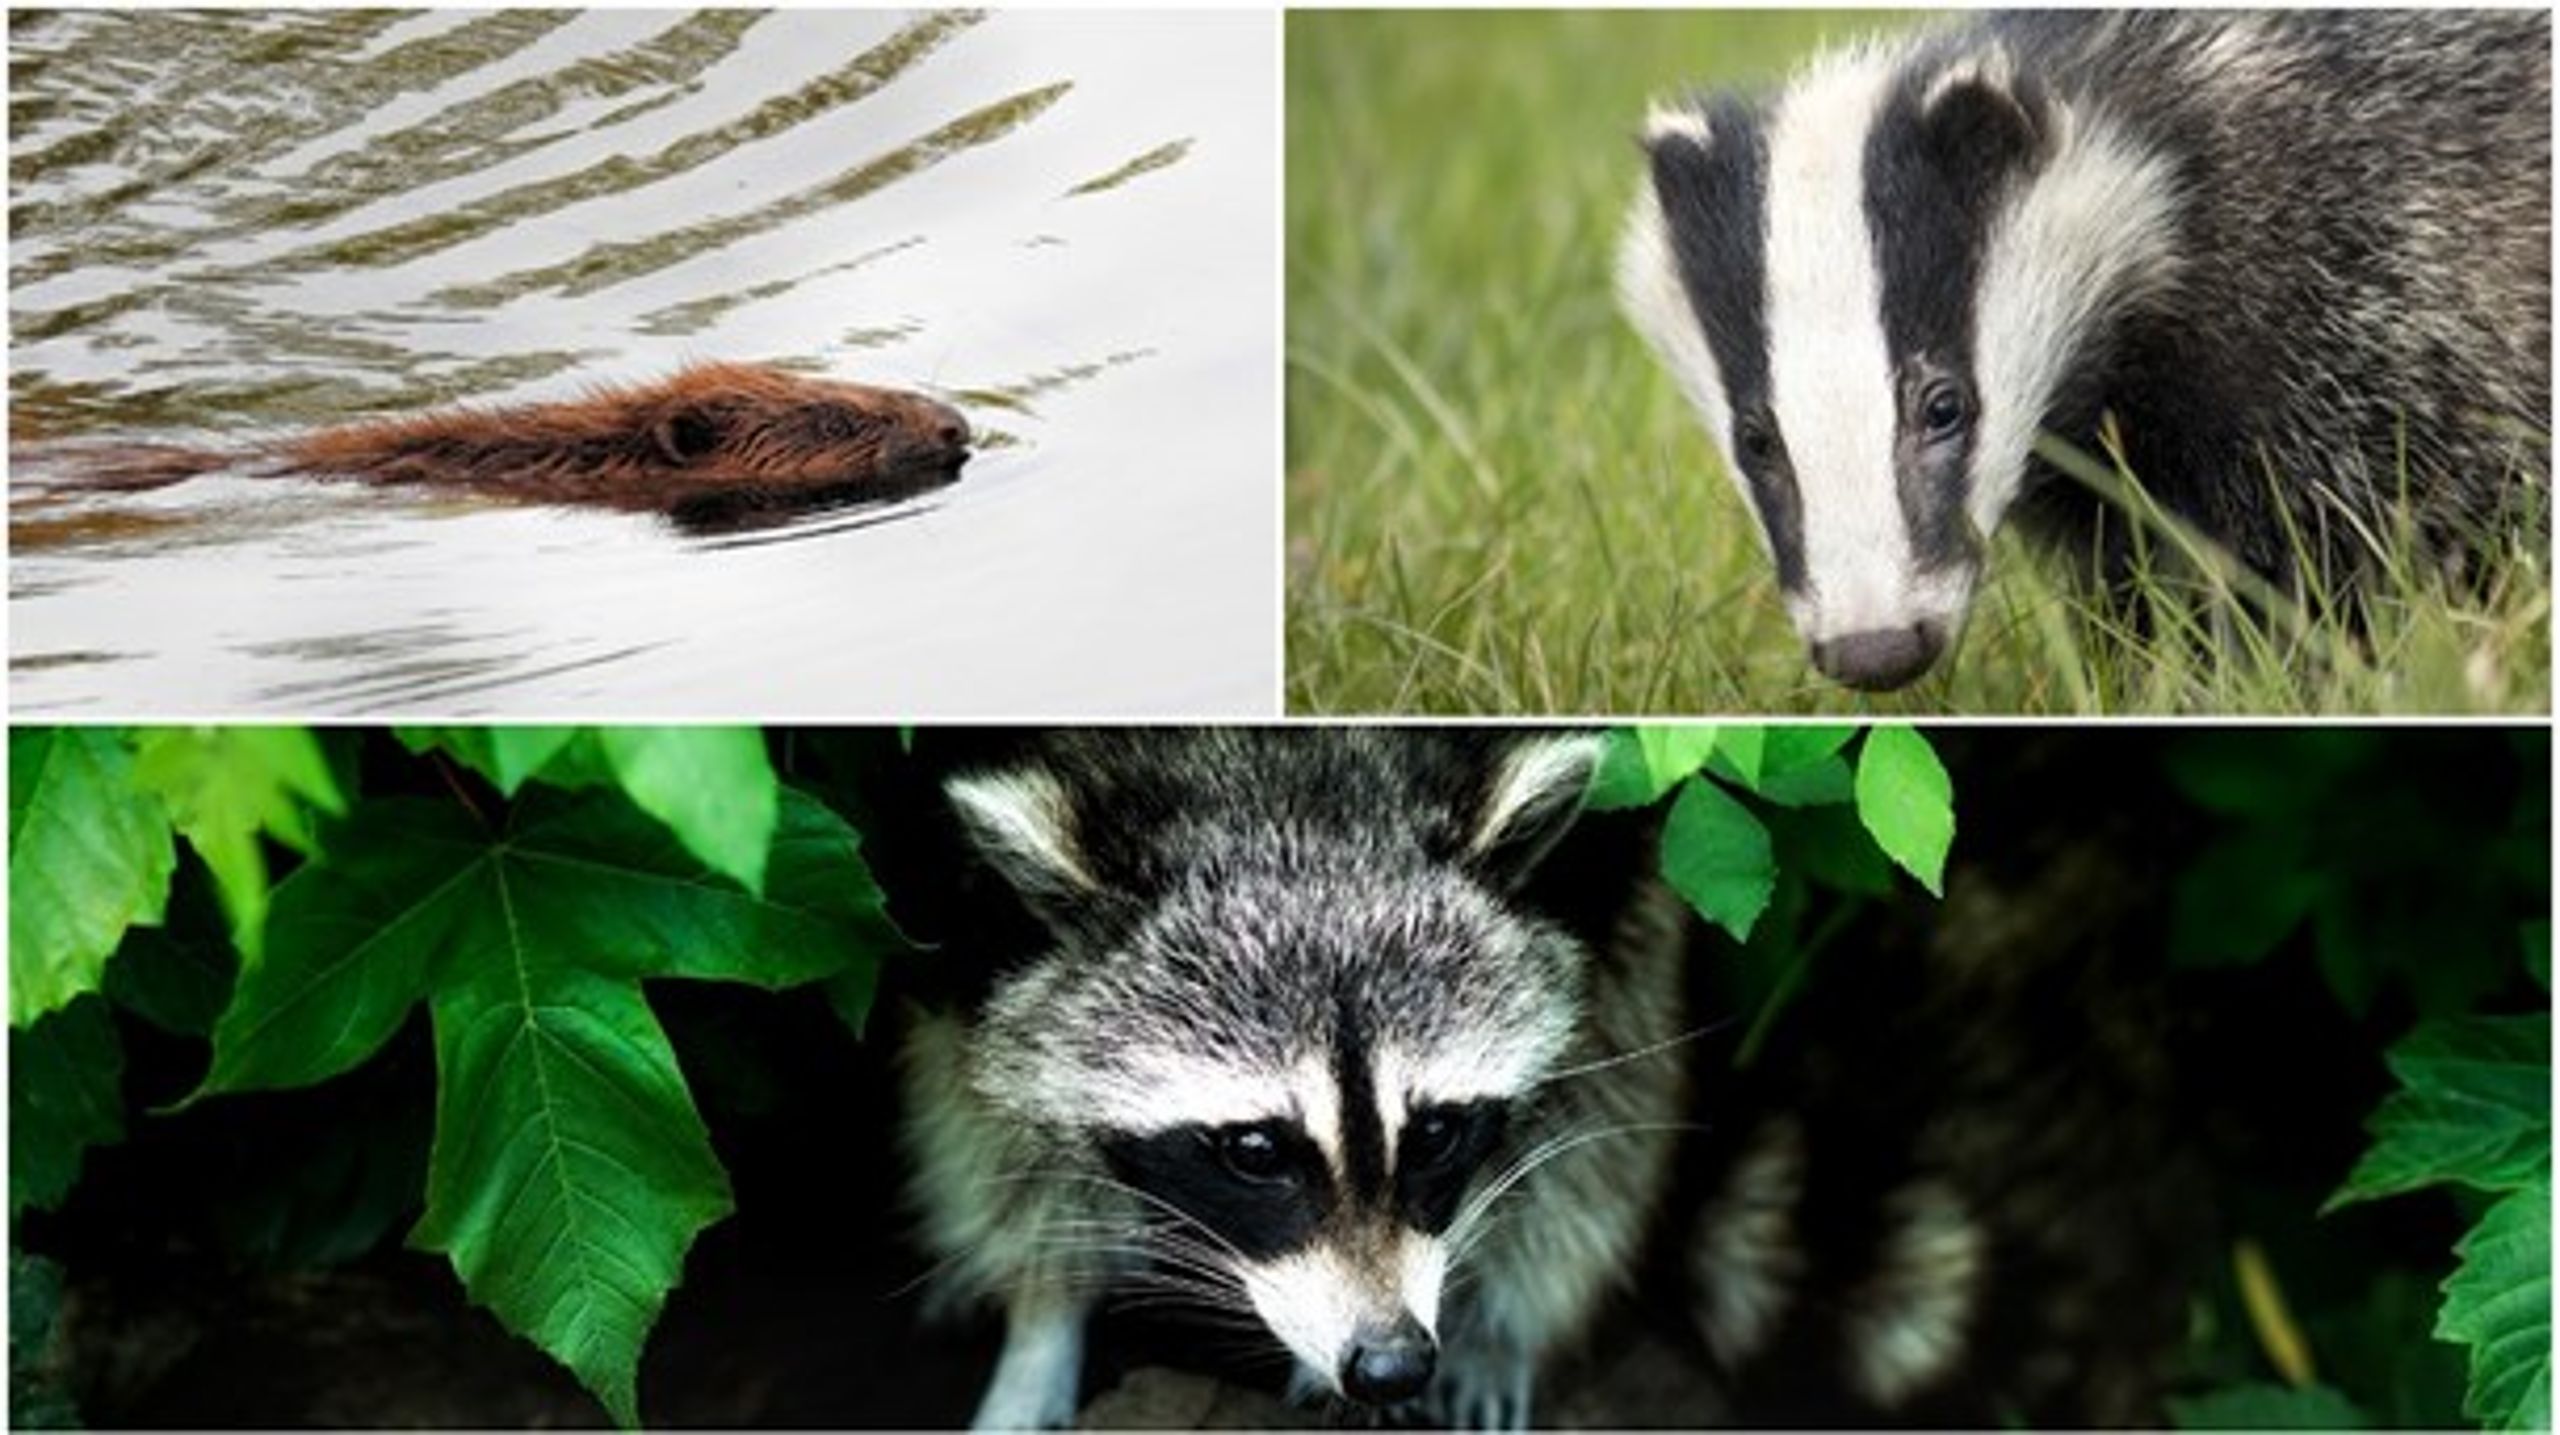 Bäver, grävling och tvättbjörn. Tre arter som ska få jagas med pilbåge, enligt Naturvårdsverkets förslag.